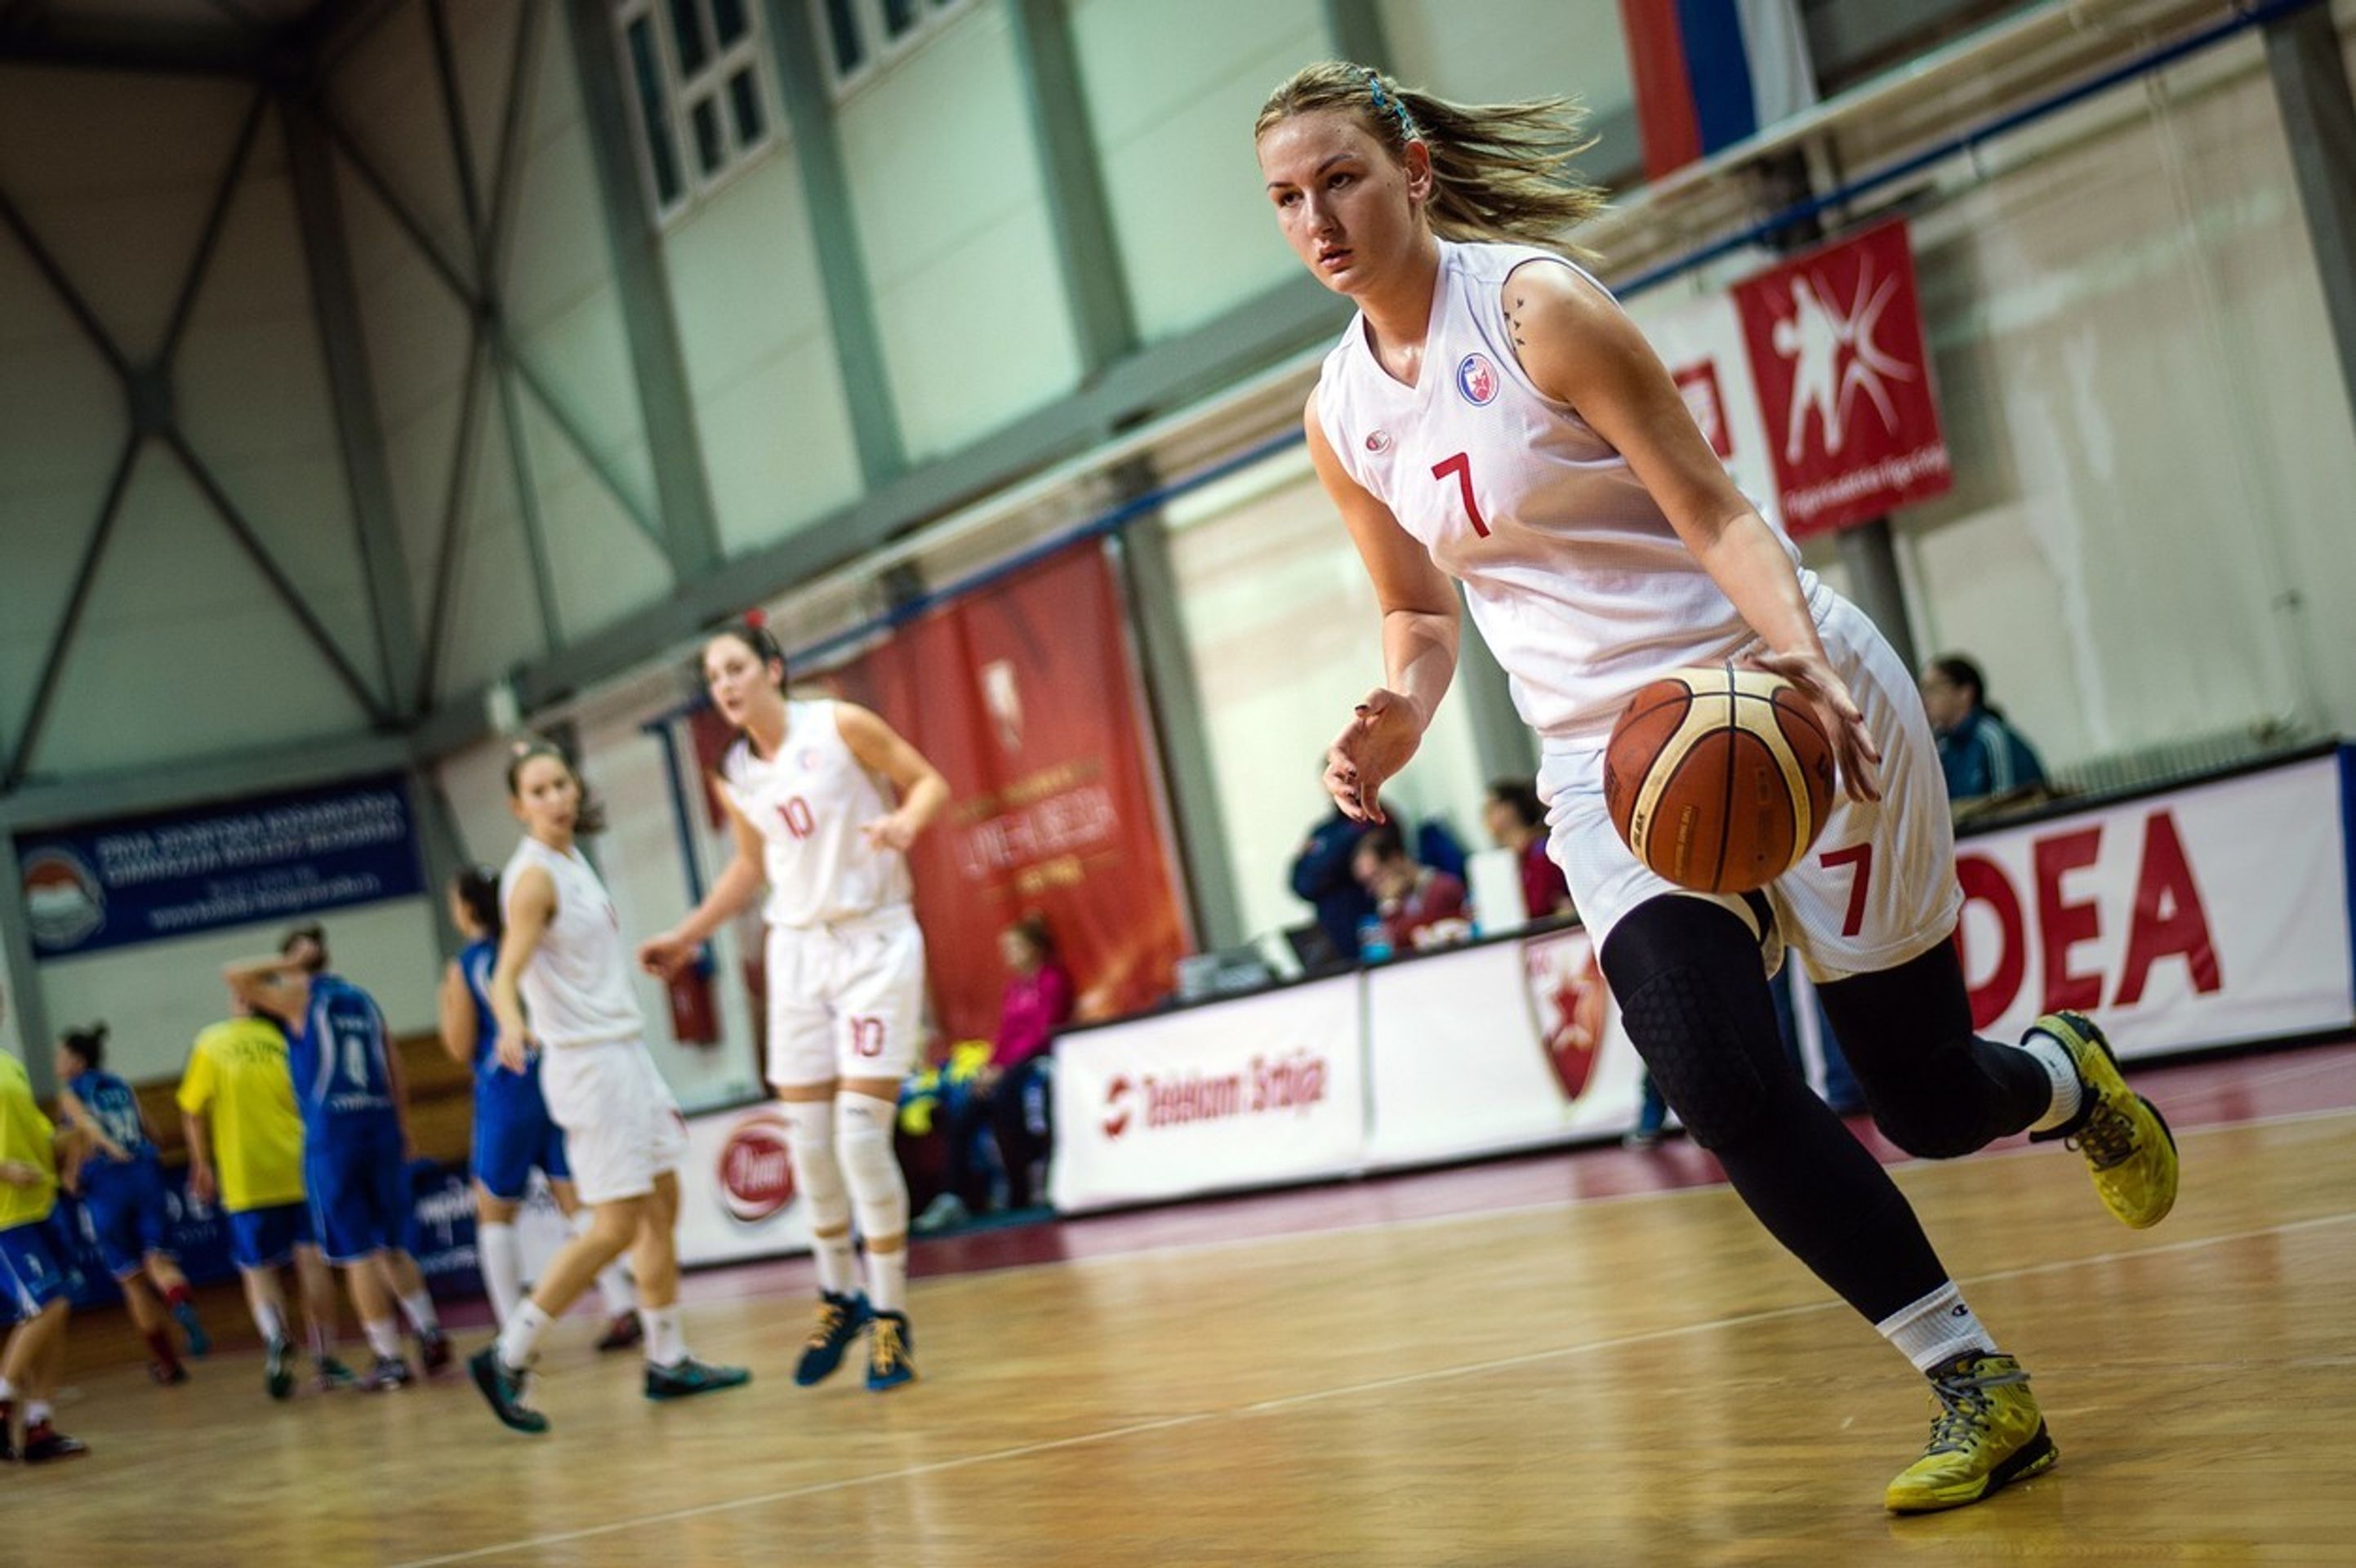 Srbská basketbalistka hraje s ortézou - 6 - GALERIE: Srbská basketbalistka hraje s protézou (2/7)